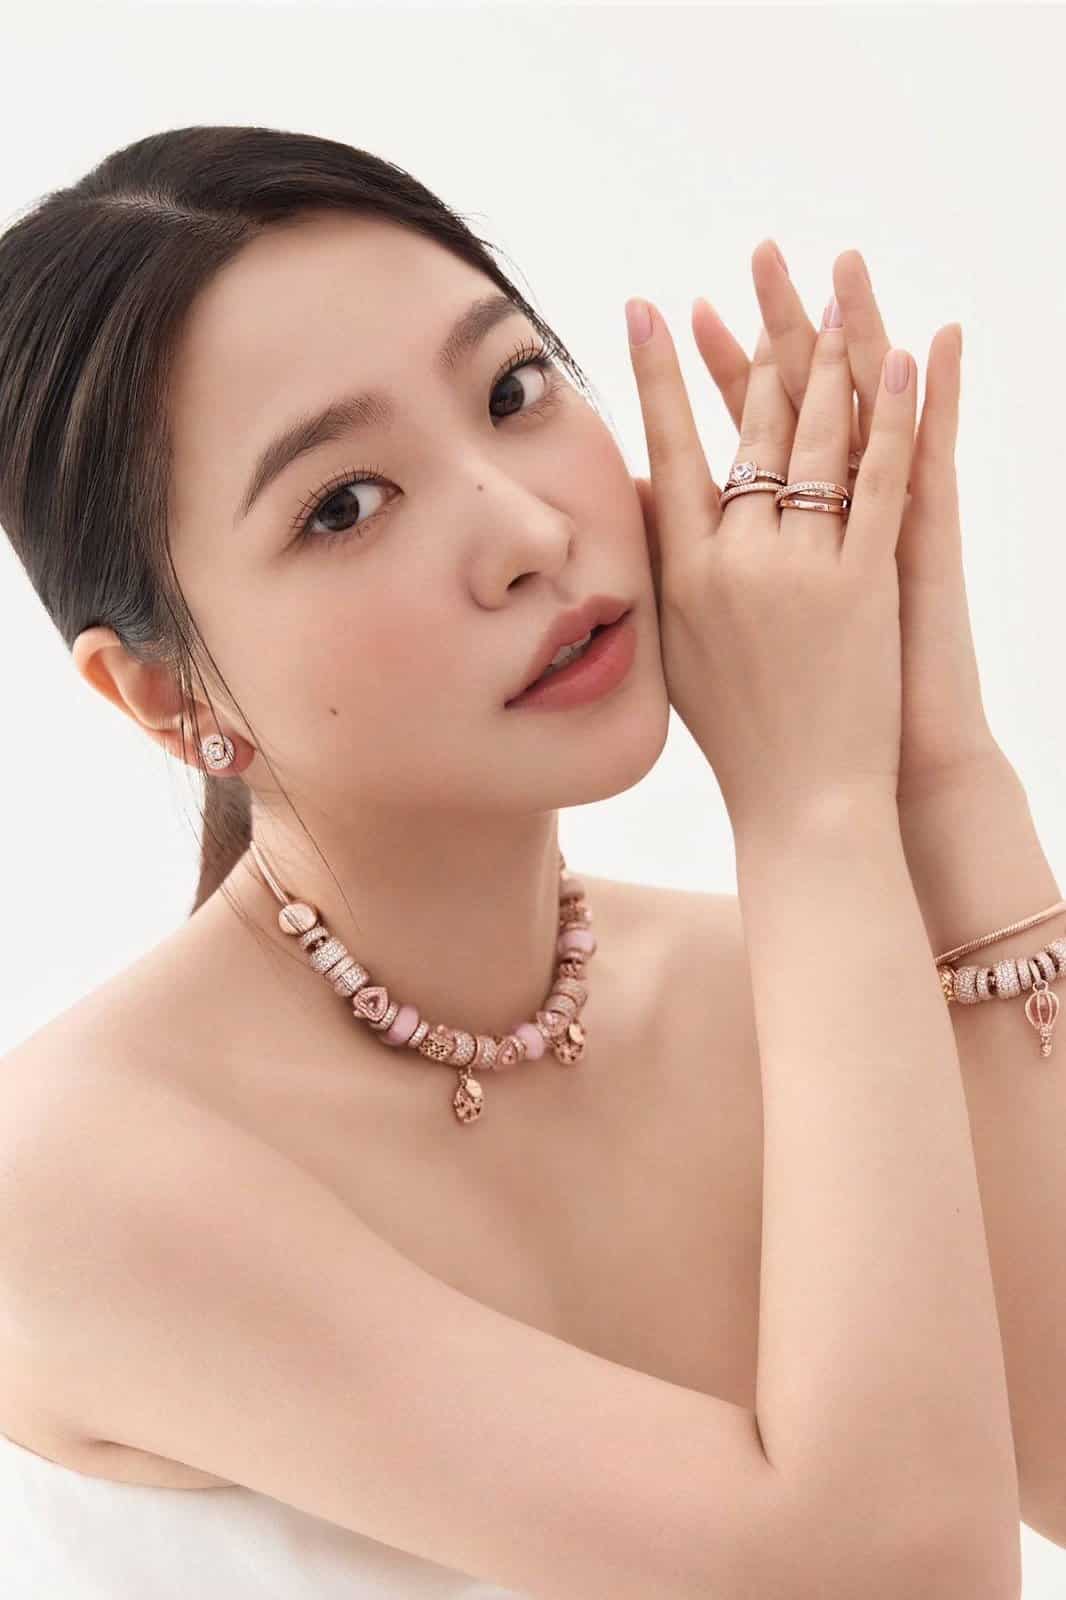 Red Velvet были выбраны новыми моделями ювелирного бренда Pandora Jewelry